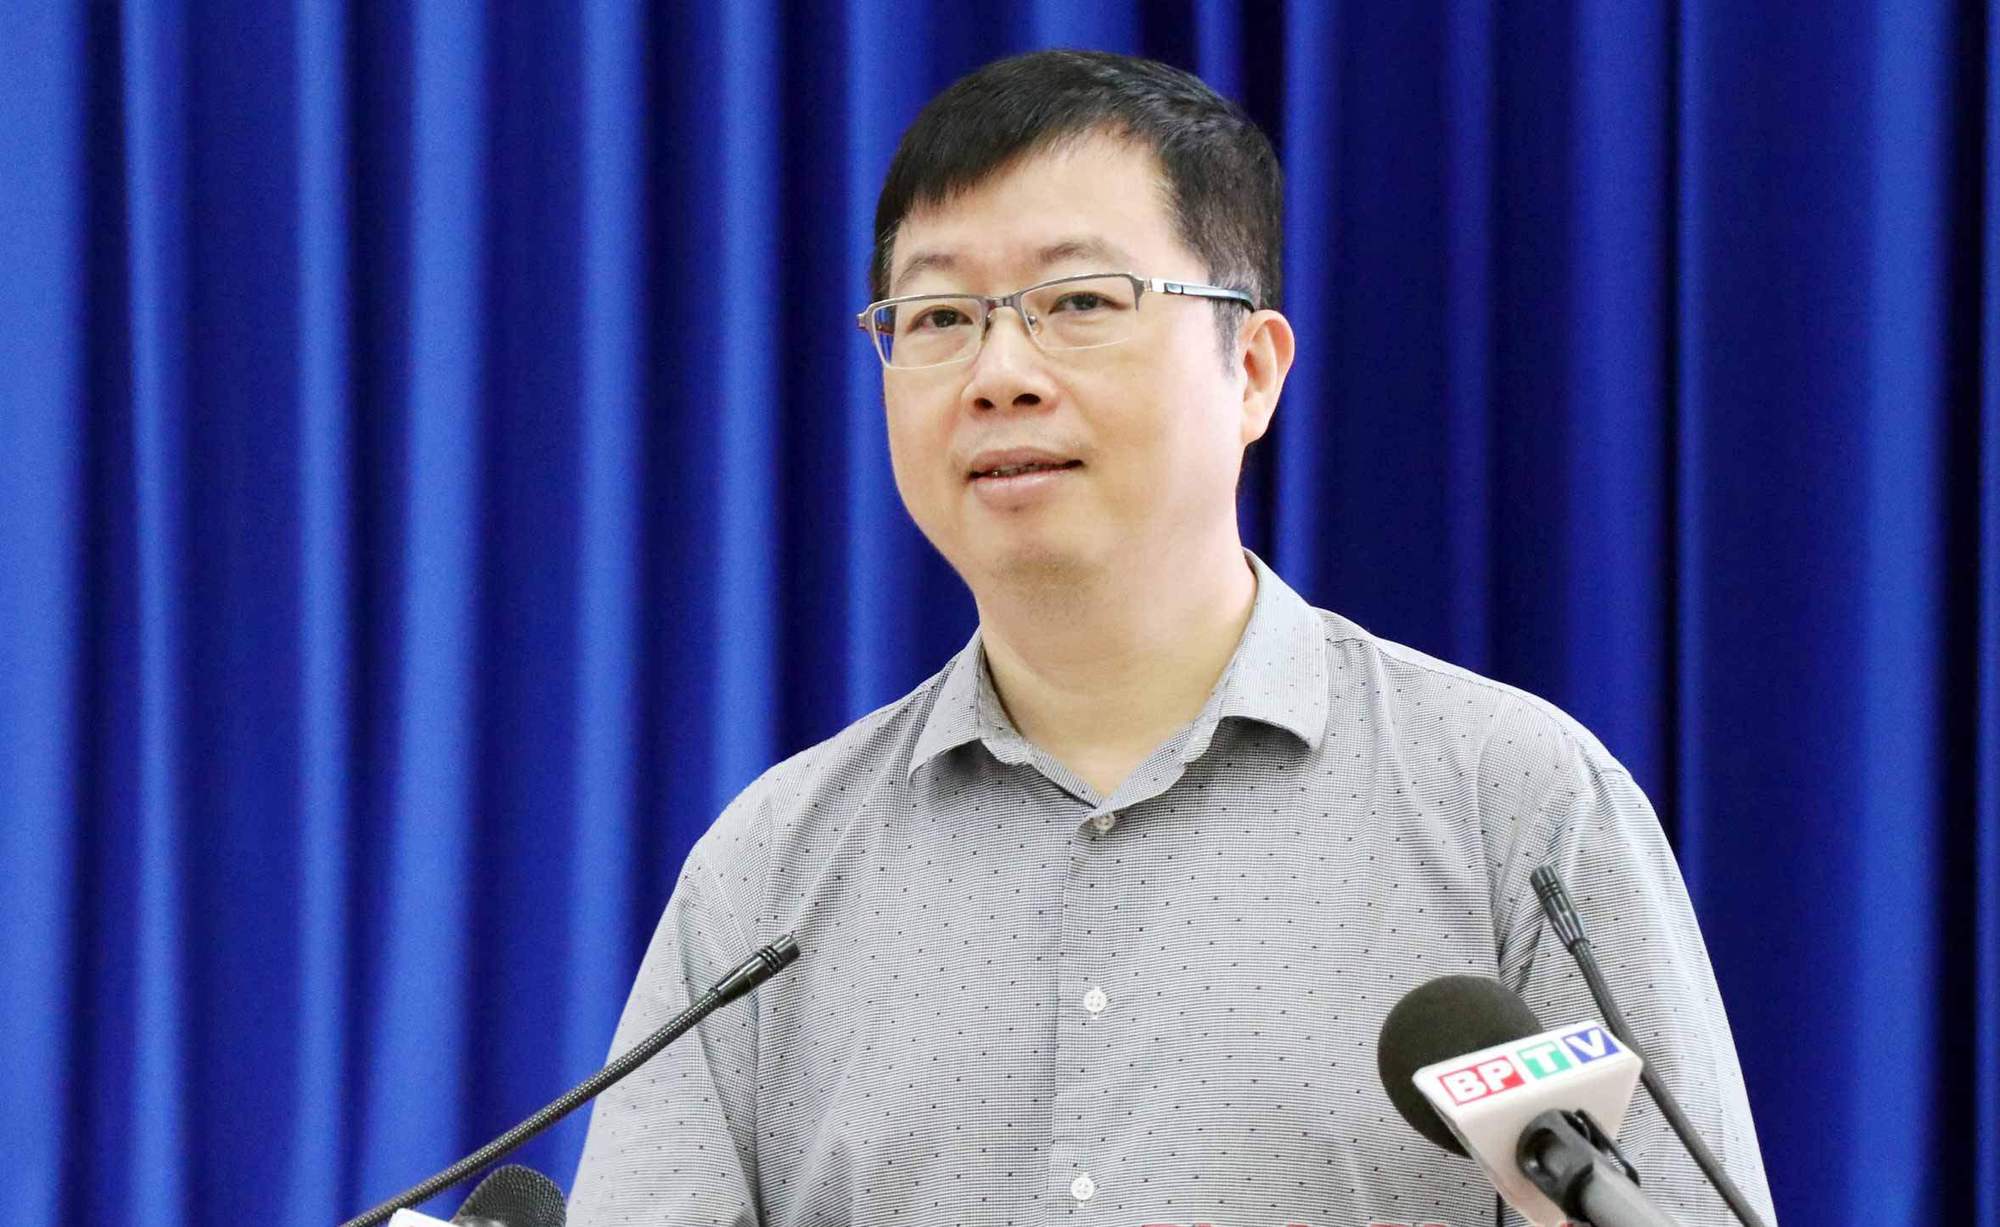 Cục trưởng Nguyễn Thanh Lâm được bổ nhiệm làm Thứ trưởng Bộ Thông tin và Truyền thông - Ảnh 1.